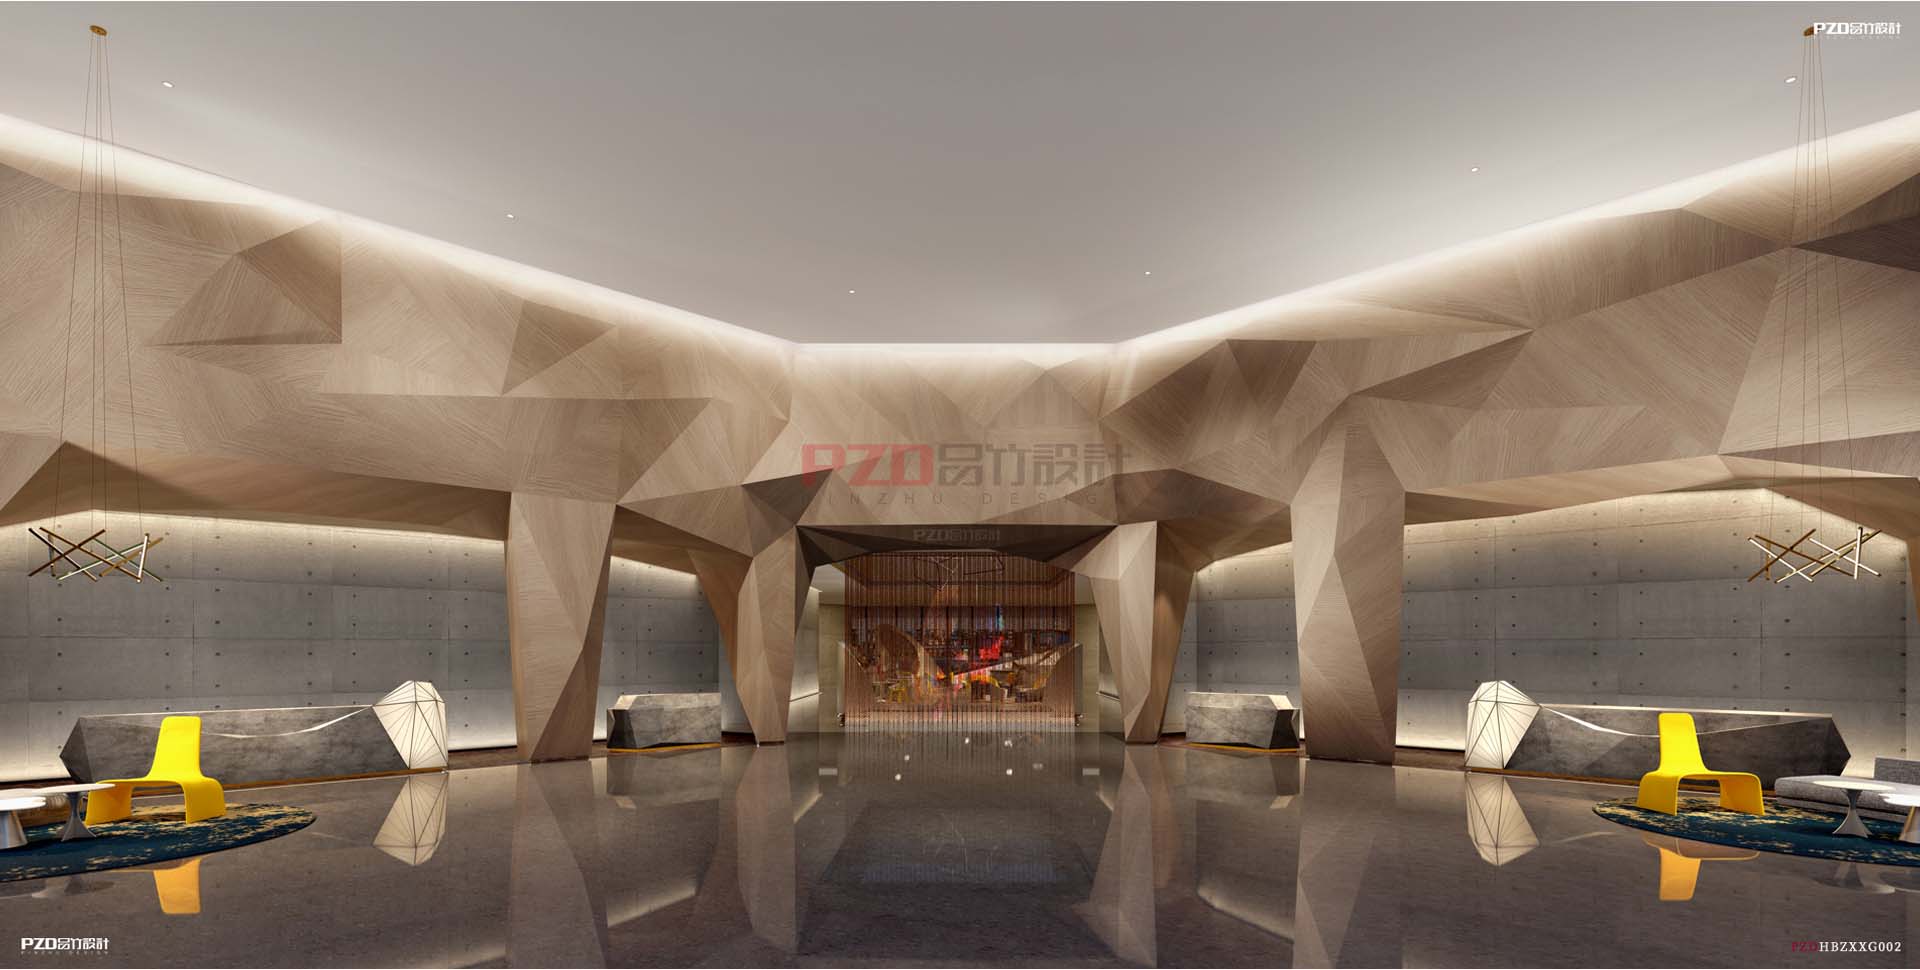 (PZD)专业酒店设计公司-高端酒店设计公司-品竹酒店设计公司